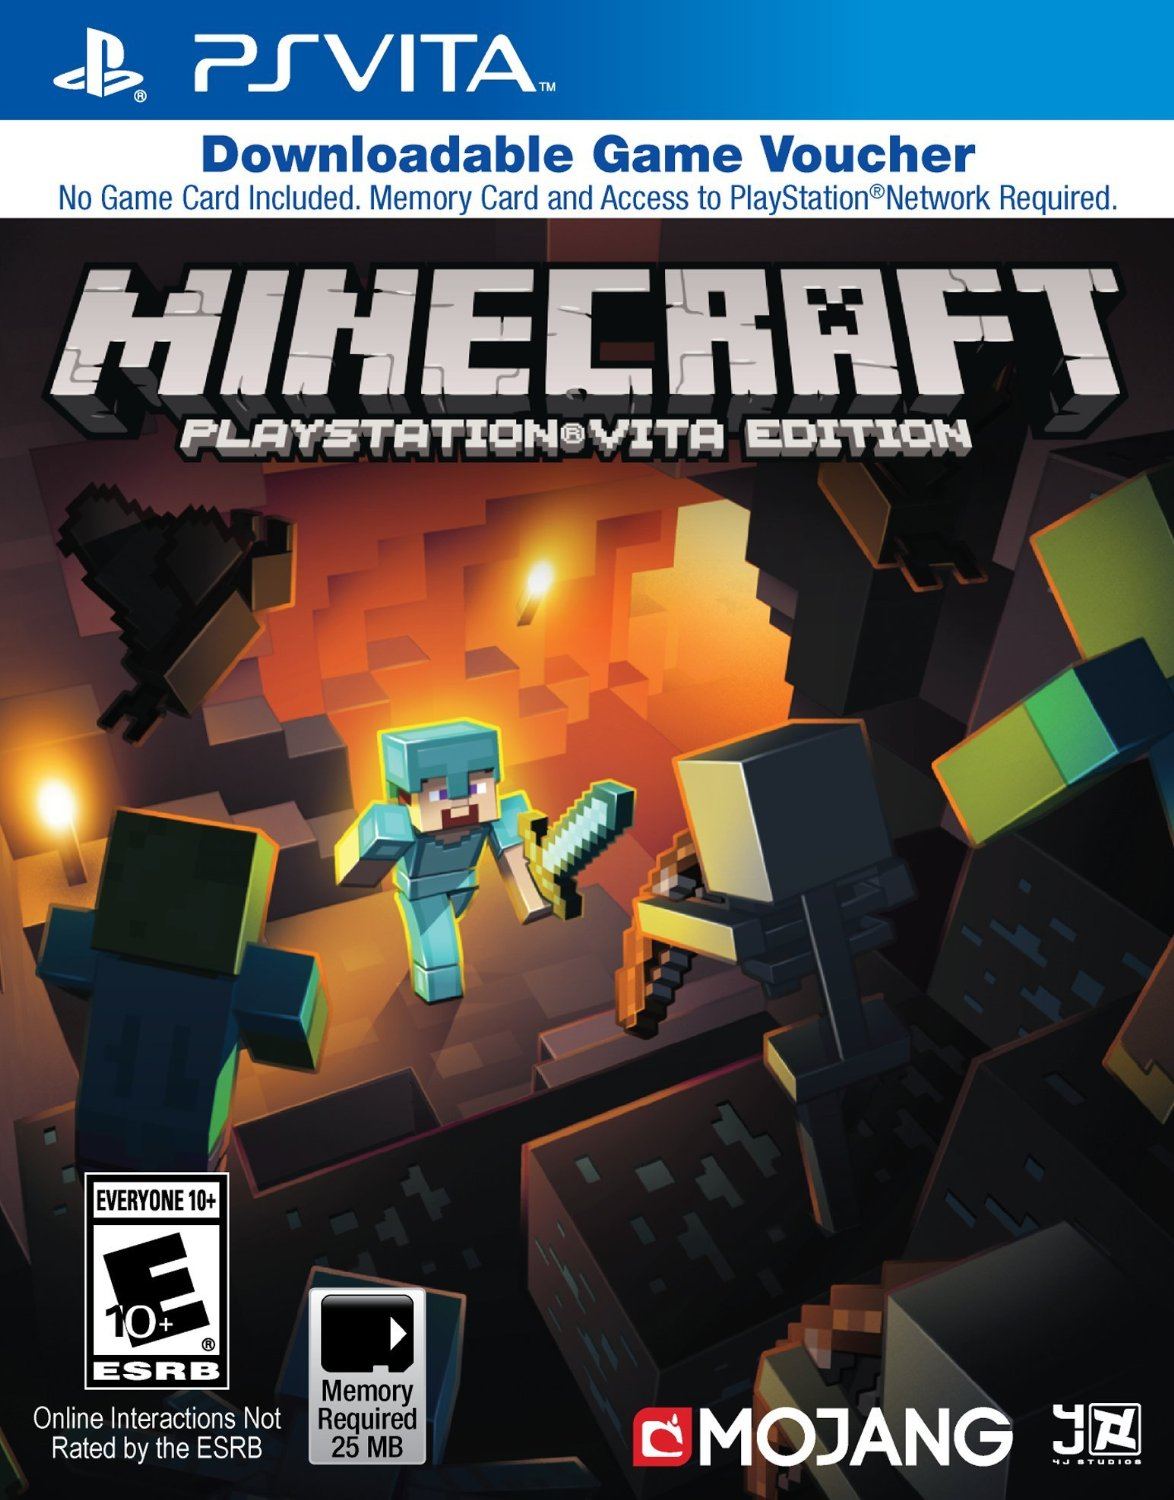 Minecraft: PlayStation Vita Edition for PlayStation Vita